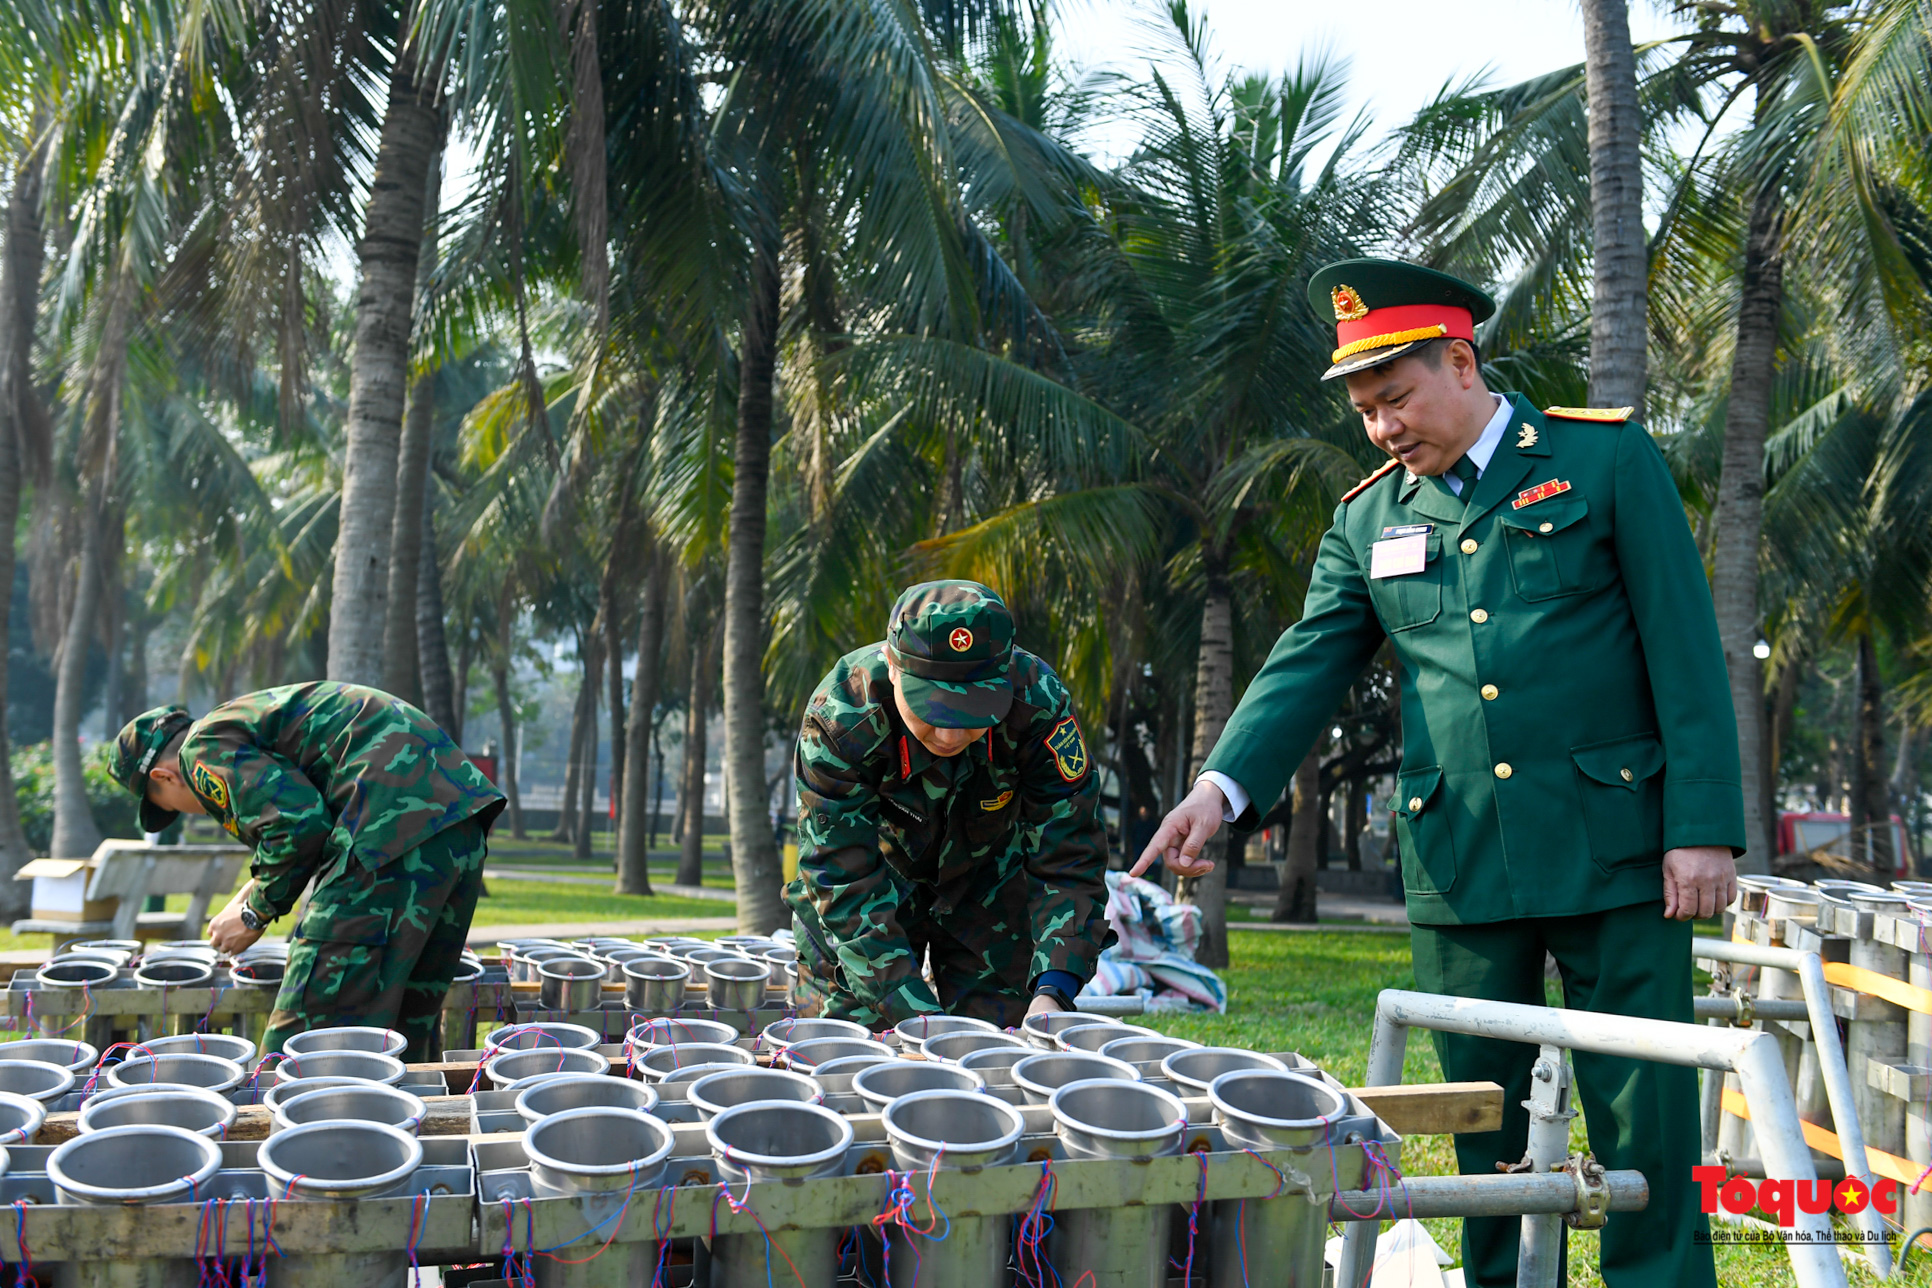 Hà Nội: Cận cảnh lắp đặt trận địa pháo hoa phục vụ đêm Giao thừa - Ảnh 3.